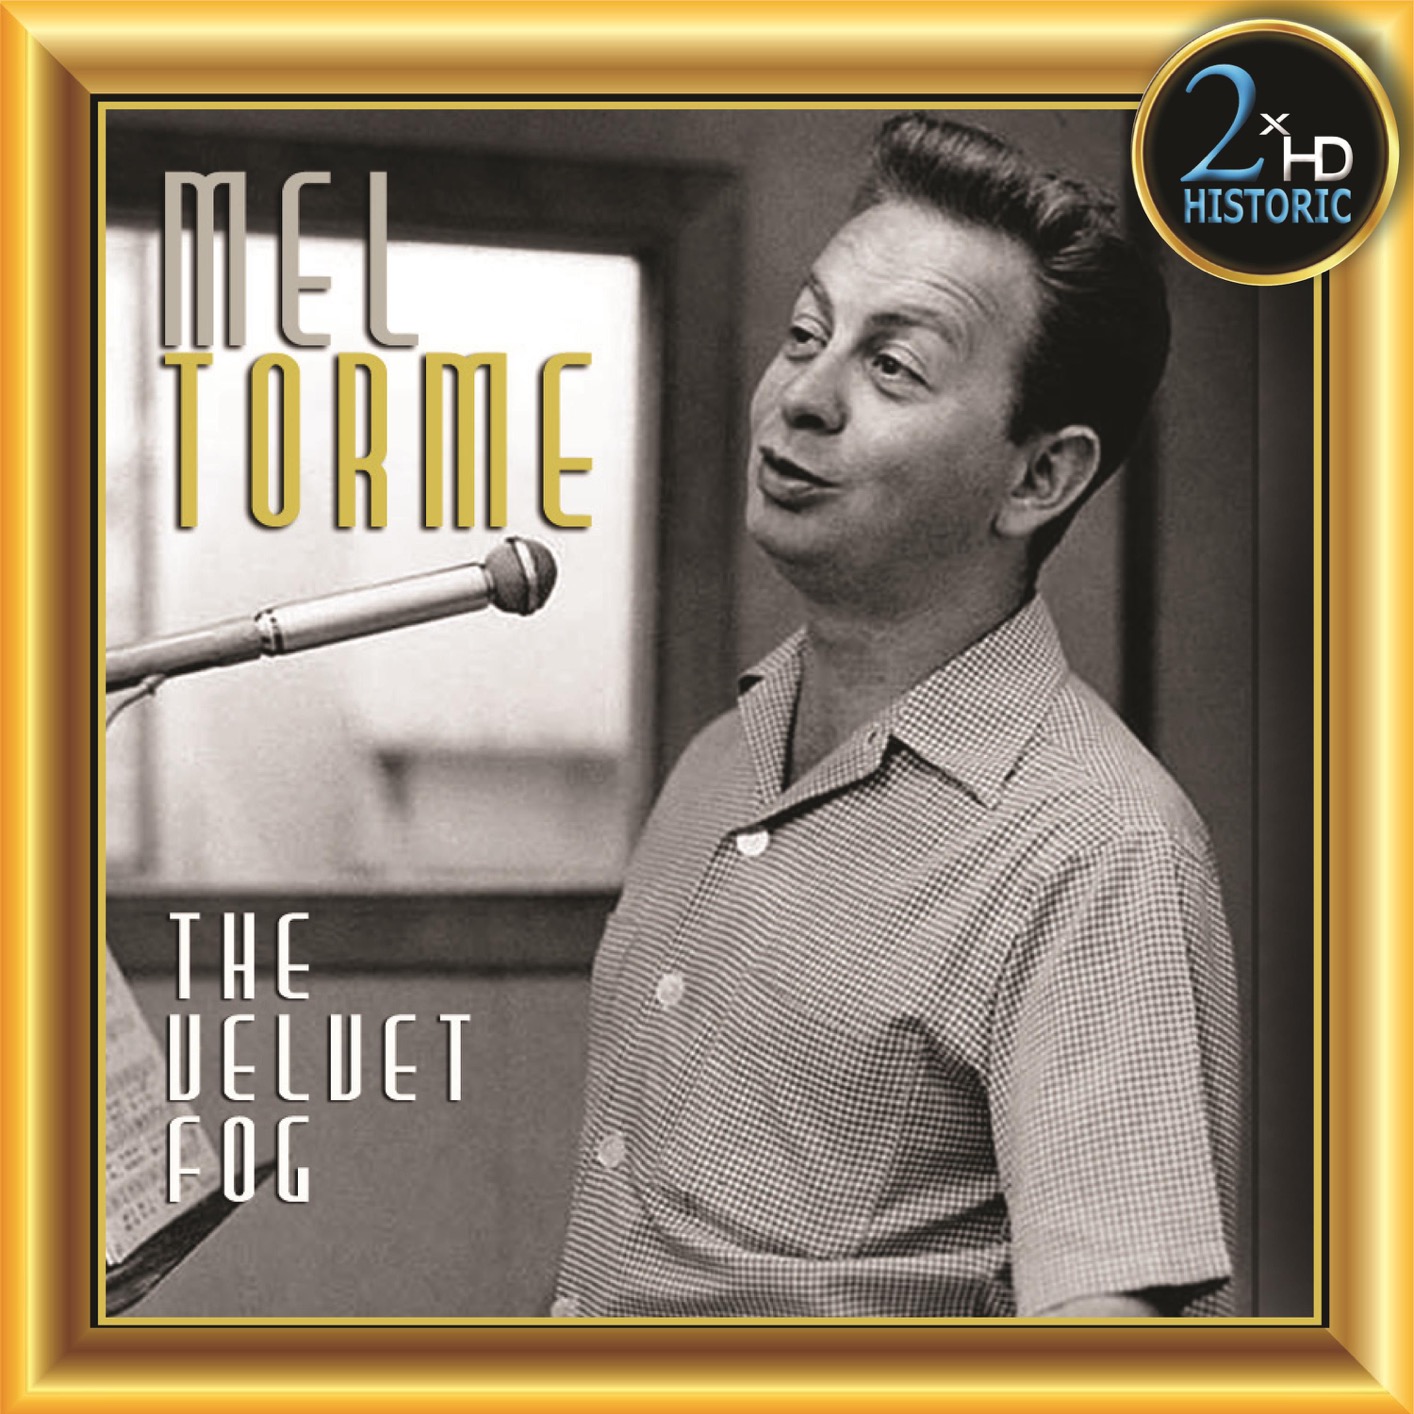 Mel Tormé - The Velvet Fog (Remastered) (2019) [FLAC 24bit/192kHz]